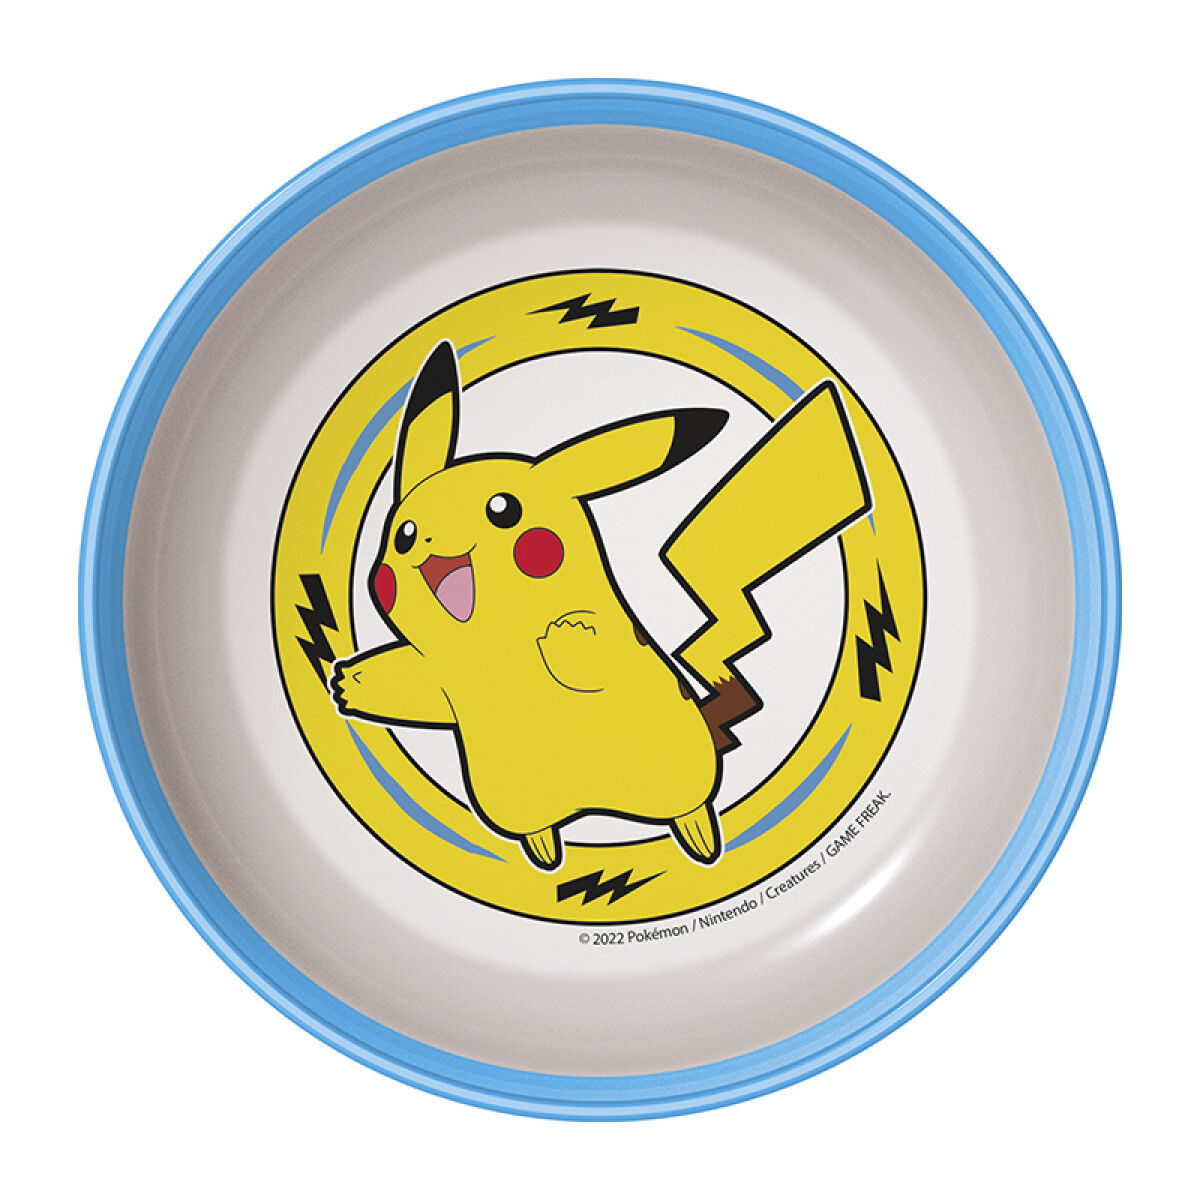 Bowl Plástico Pokémon para Microondas 